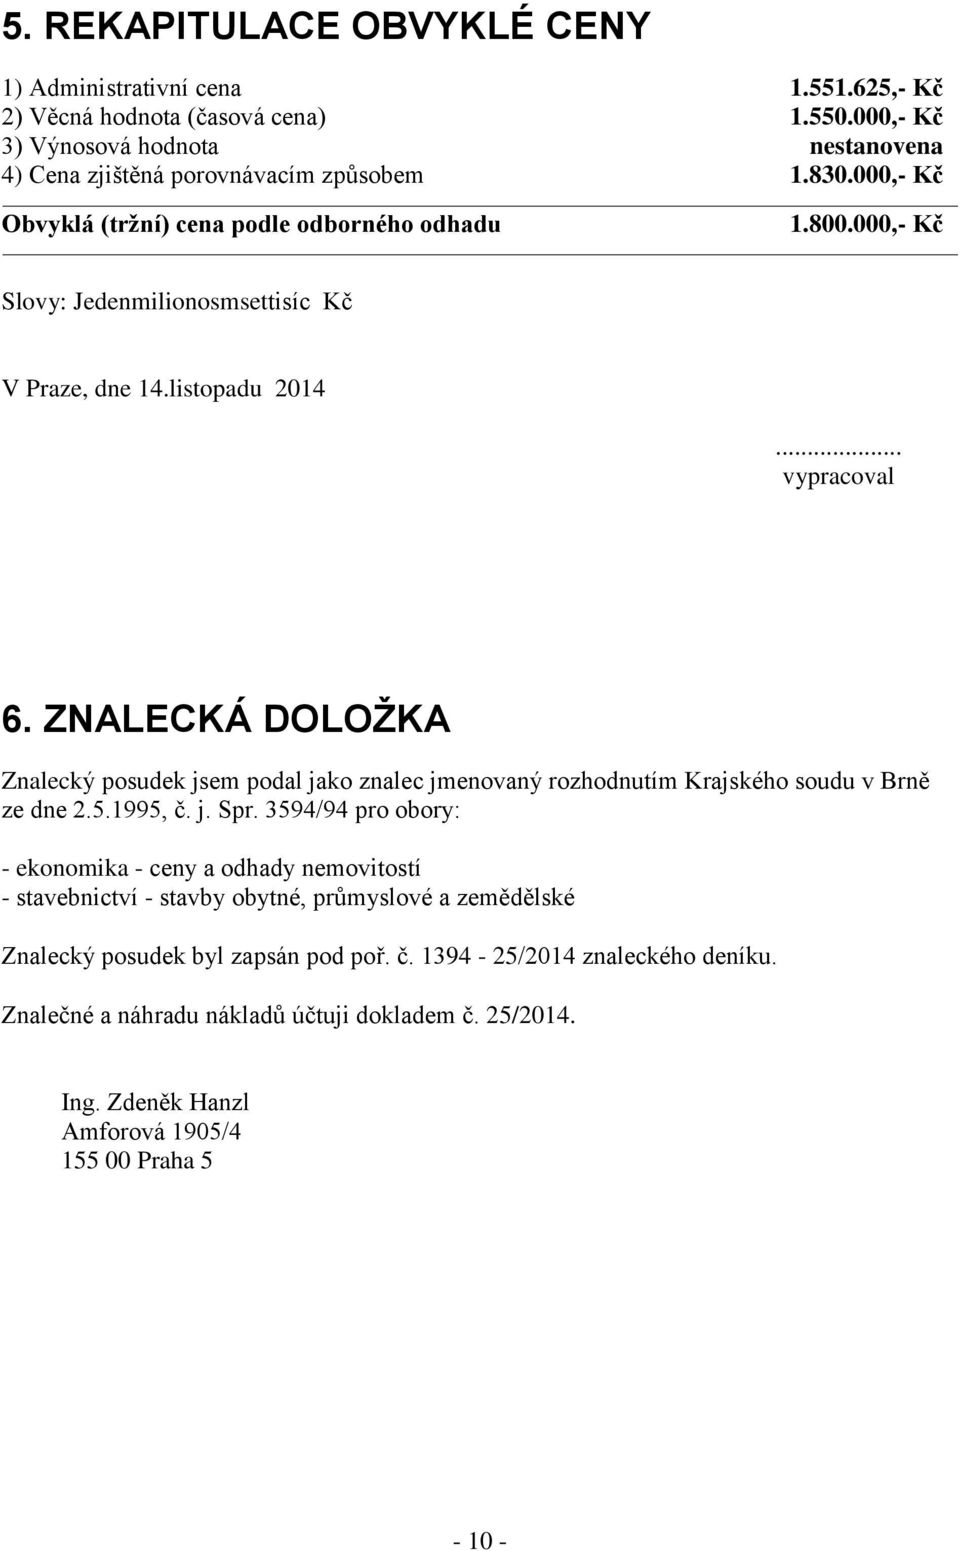 ZNALECKÁ DOLOŽKA Znalecký posudek jsem podal jako znalec jmenovaný rozhodnutím Krajského soudu v Brně ze dne 2.5.1995, č. j. Spr.